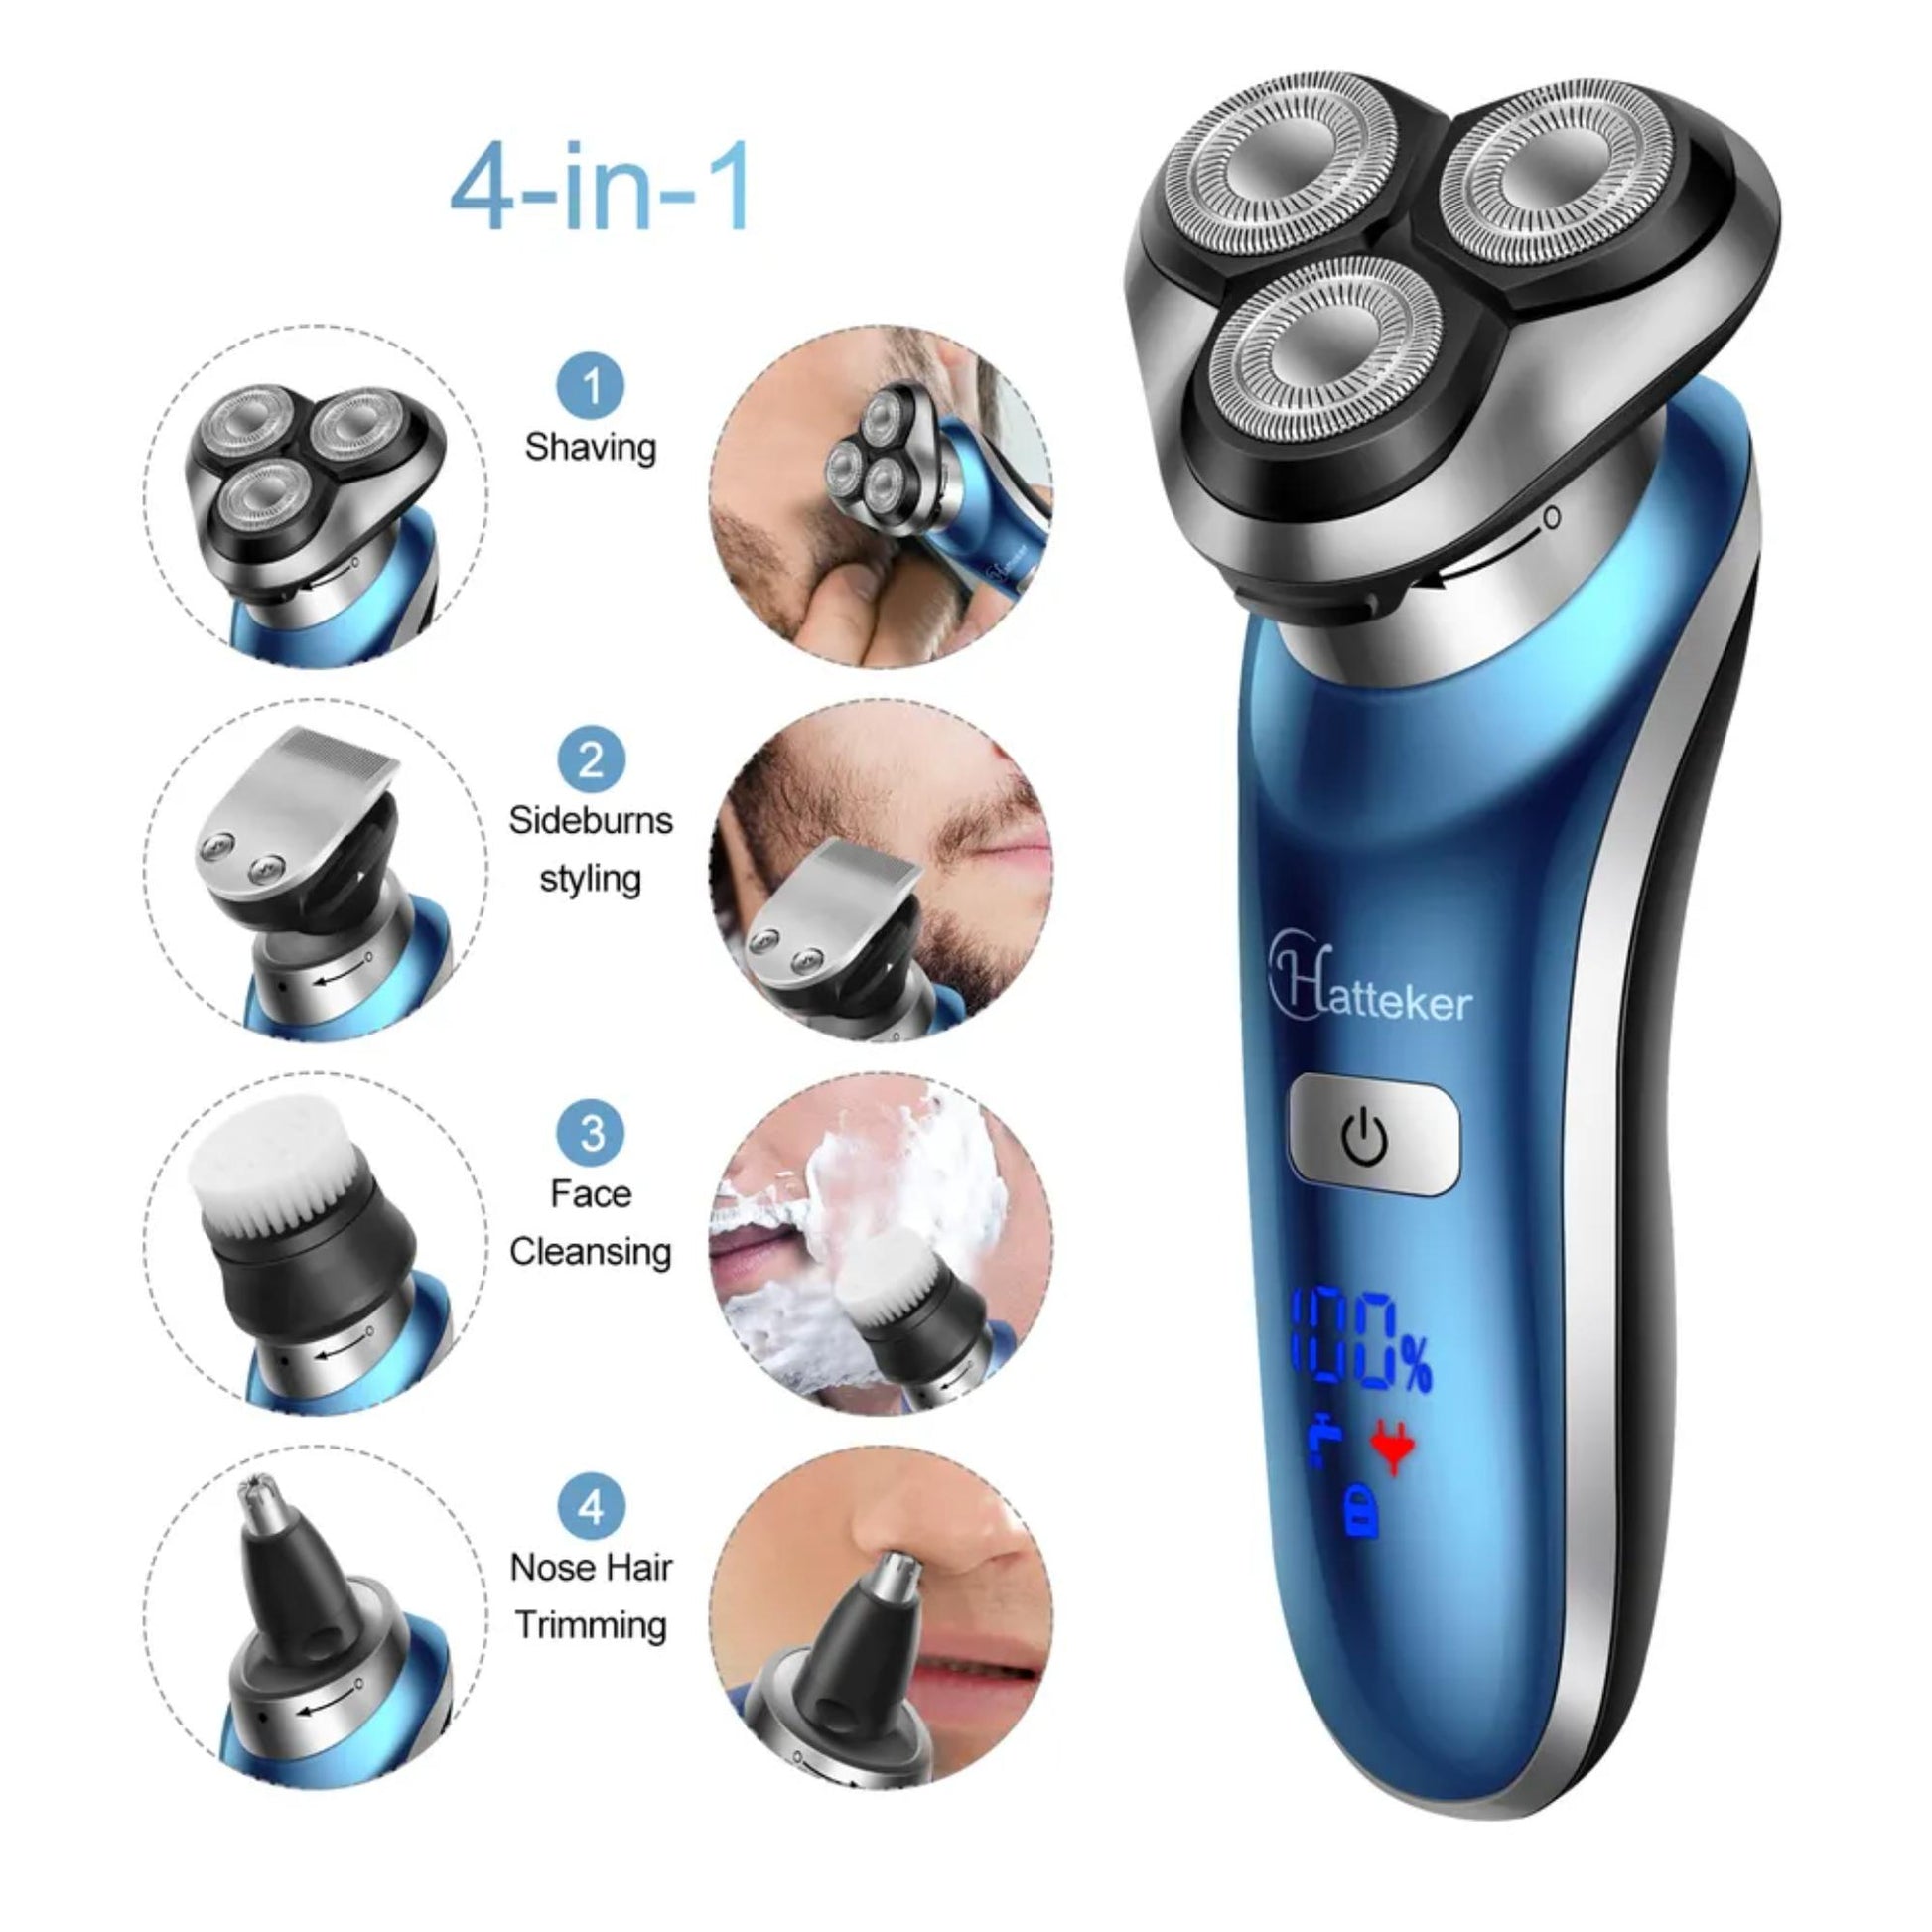 4-in-1 Rasierset für Bartpflege und Gesichtsreinigung. | Blue Chilli Electronics.